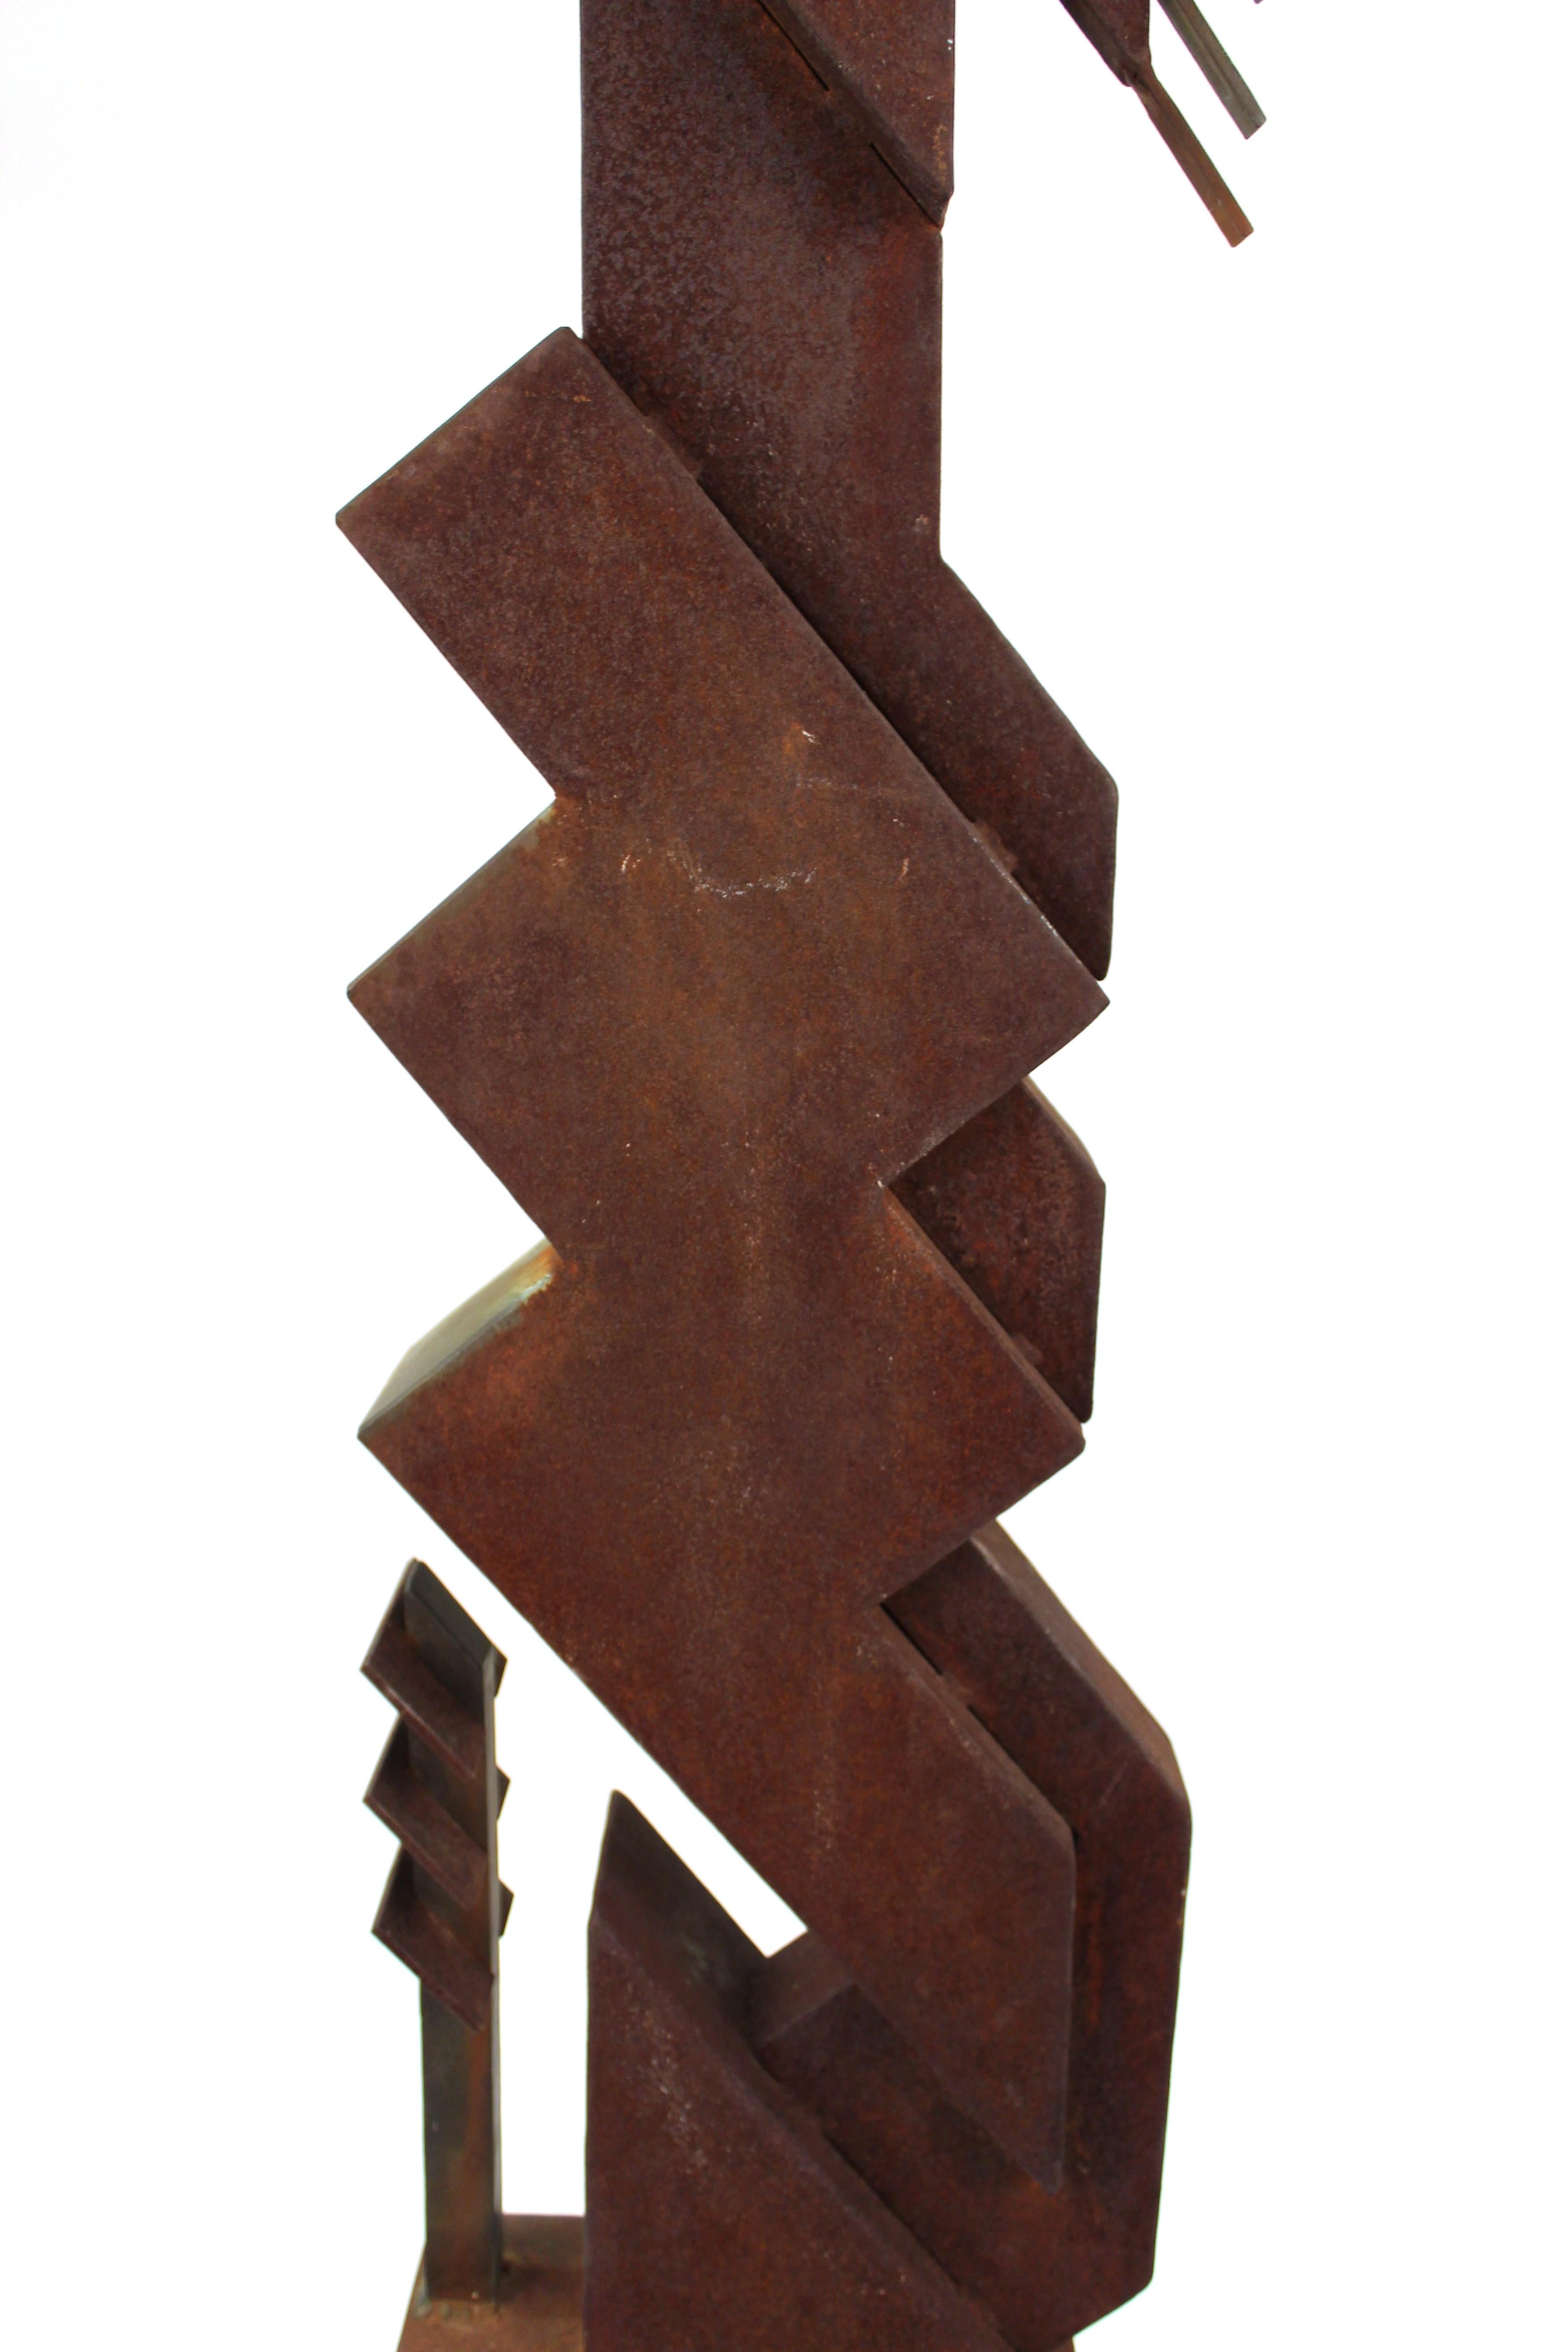 Fin du 20e siècle Sculpture TOTEM moderne abstraite brutaliste américaine en vente